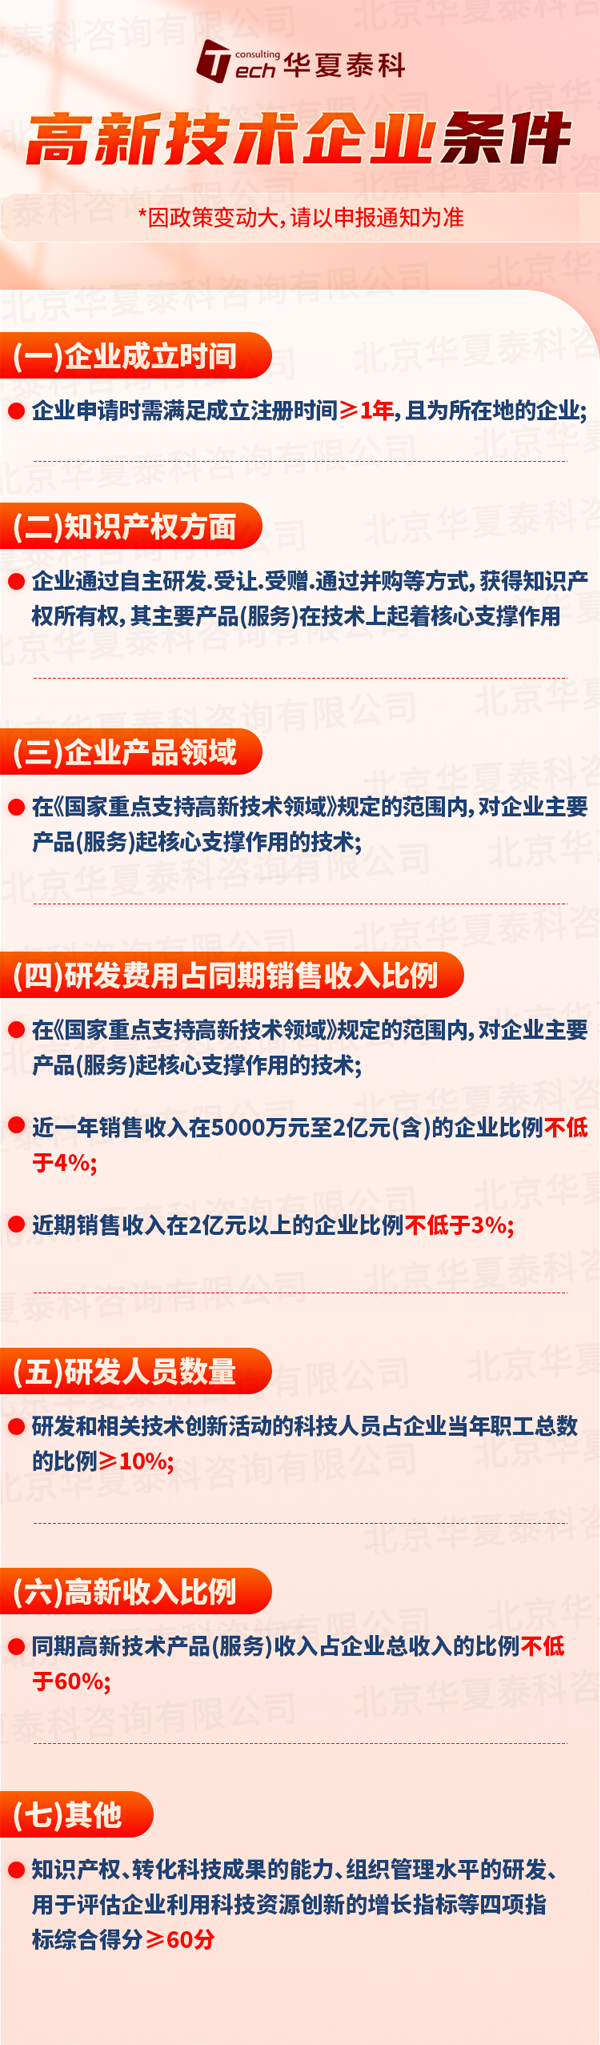 北京高新技术企业申报条件